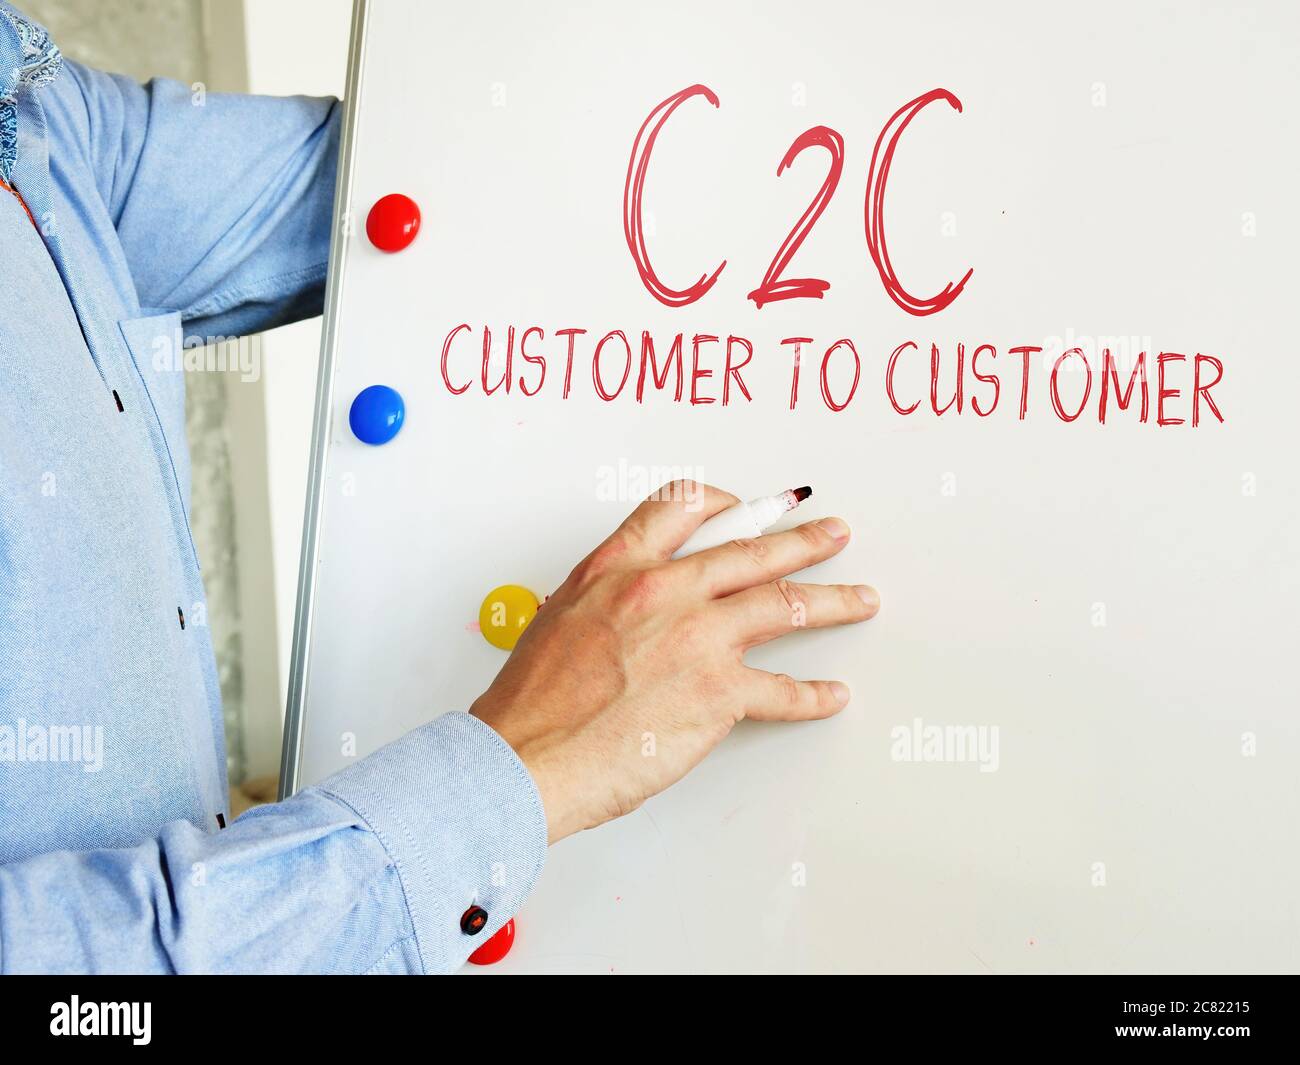 Der Manager zeigt das C2C-Geschäftsmodell von Kunde zu Kunde. Stockfoto